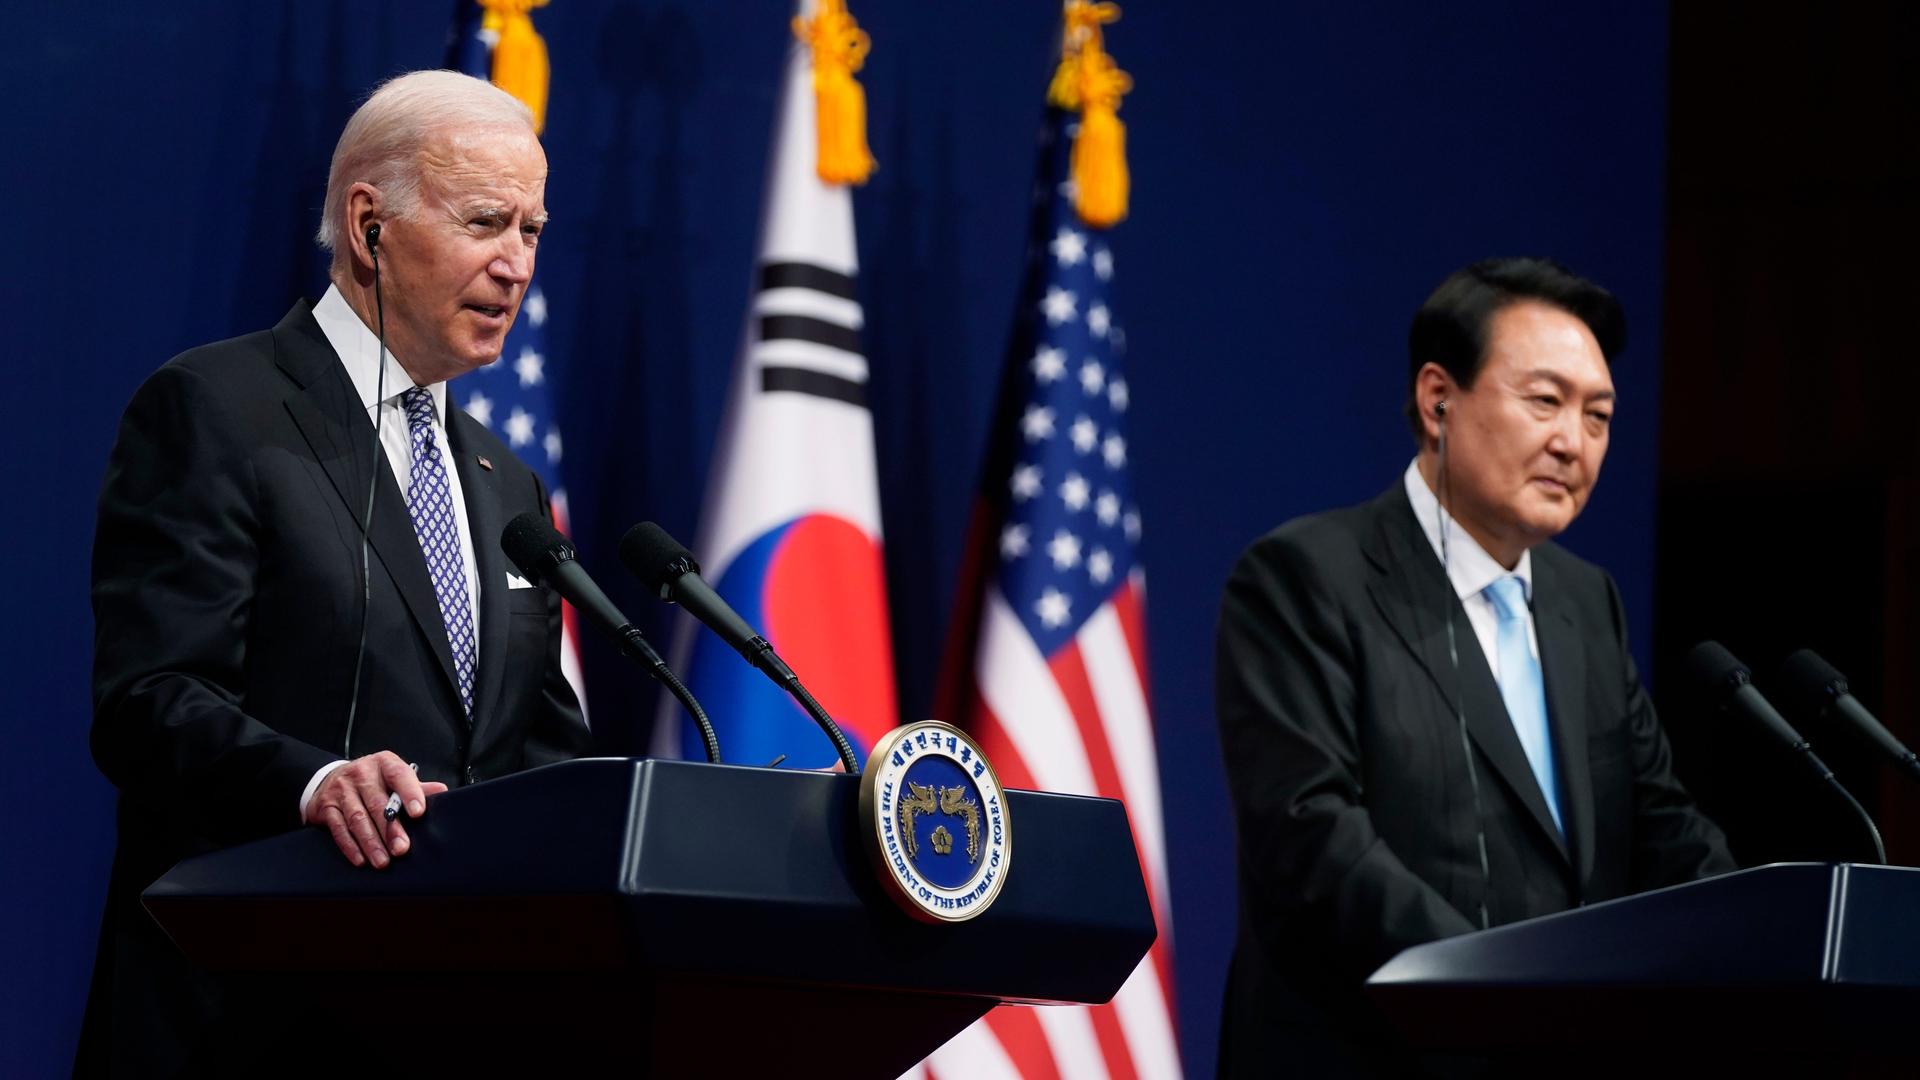 Südostasien - US-Präsident Biden auf Staatsbesuch in Südkorea - Hilfpaket für Ukraine unterzeichnet